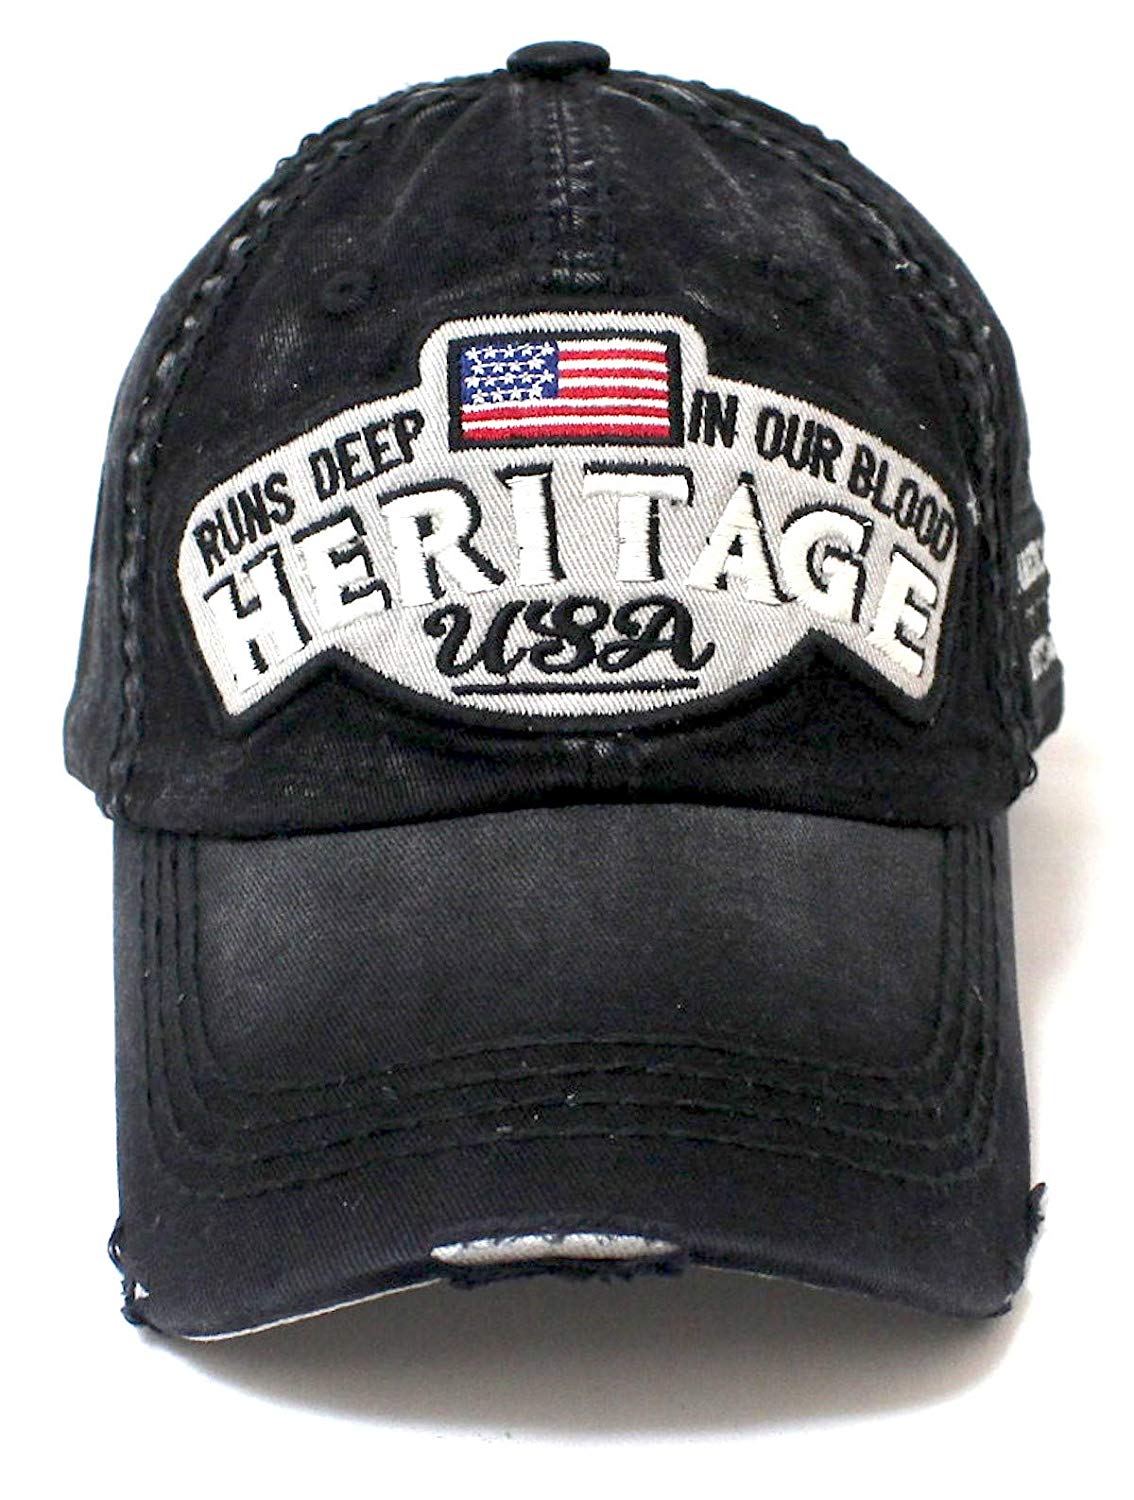 CAPS 'N VINTAGE Black Heritage USA Distressed Baseball Cap - Caps 'N Vintage 